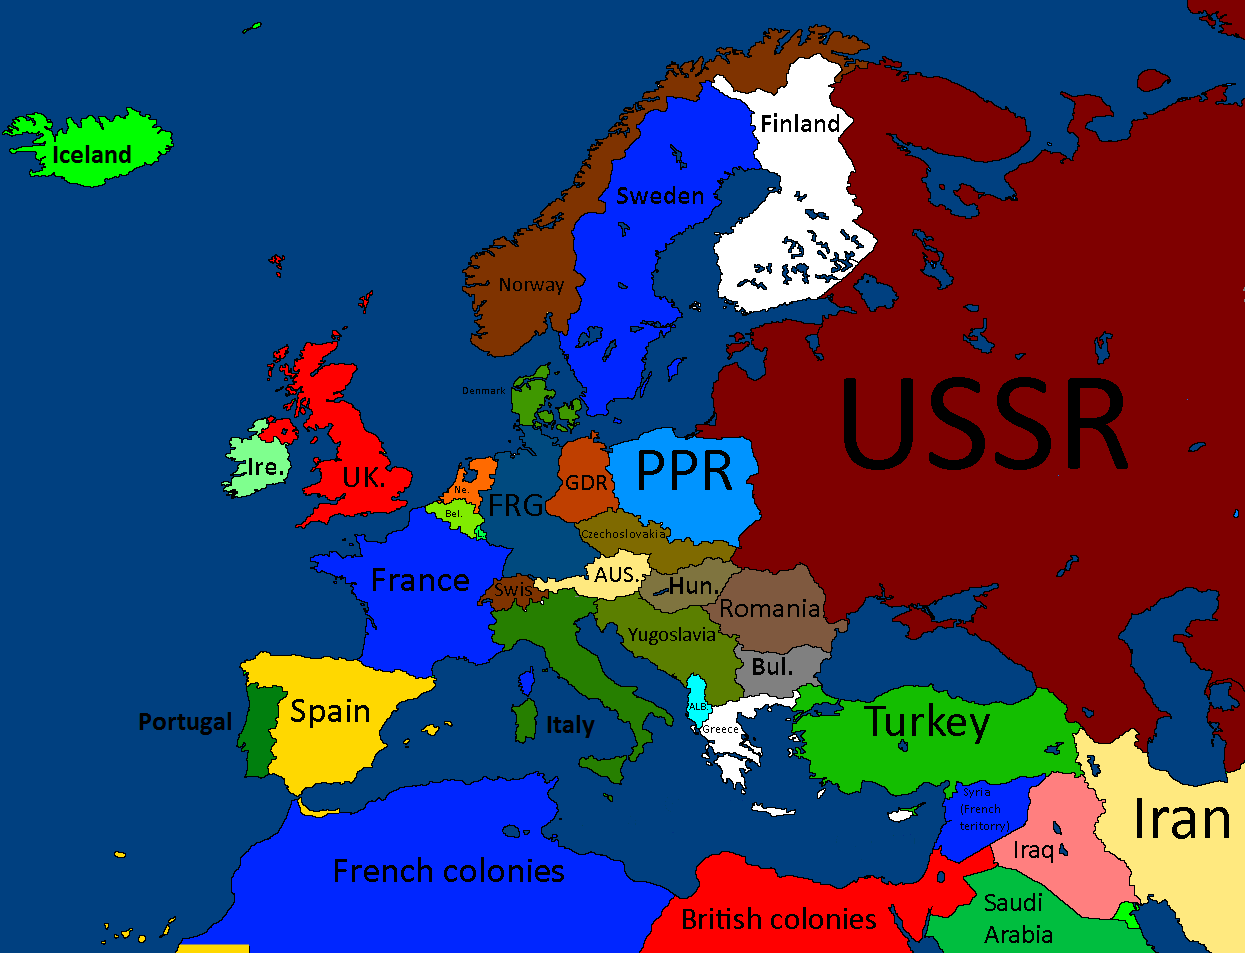 Карта европы 1980 года